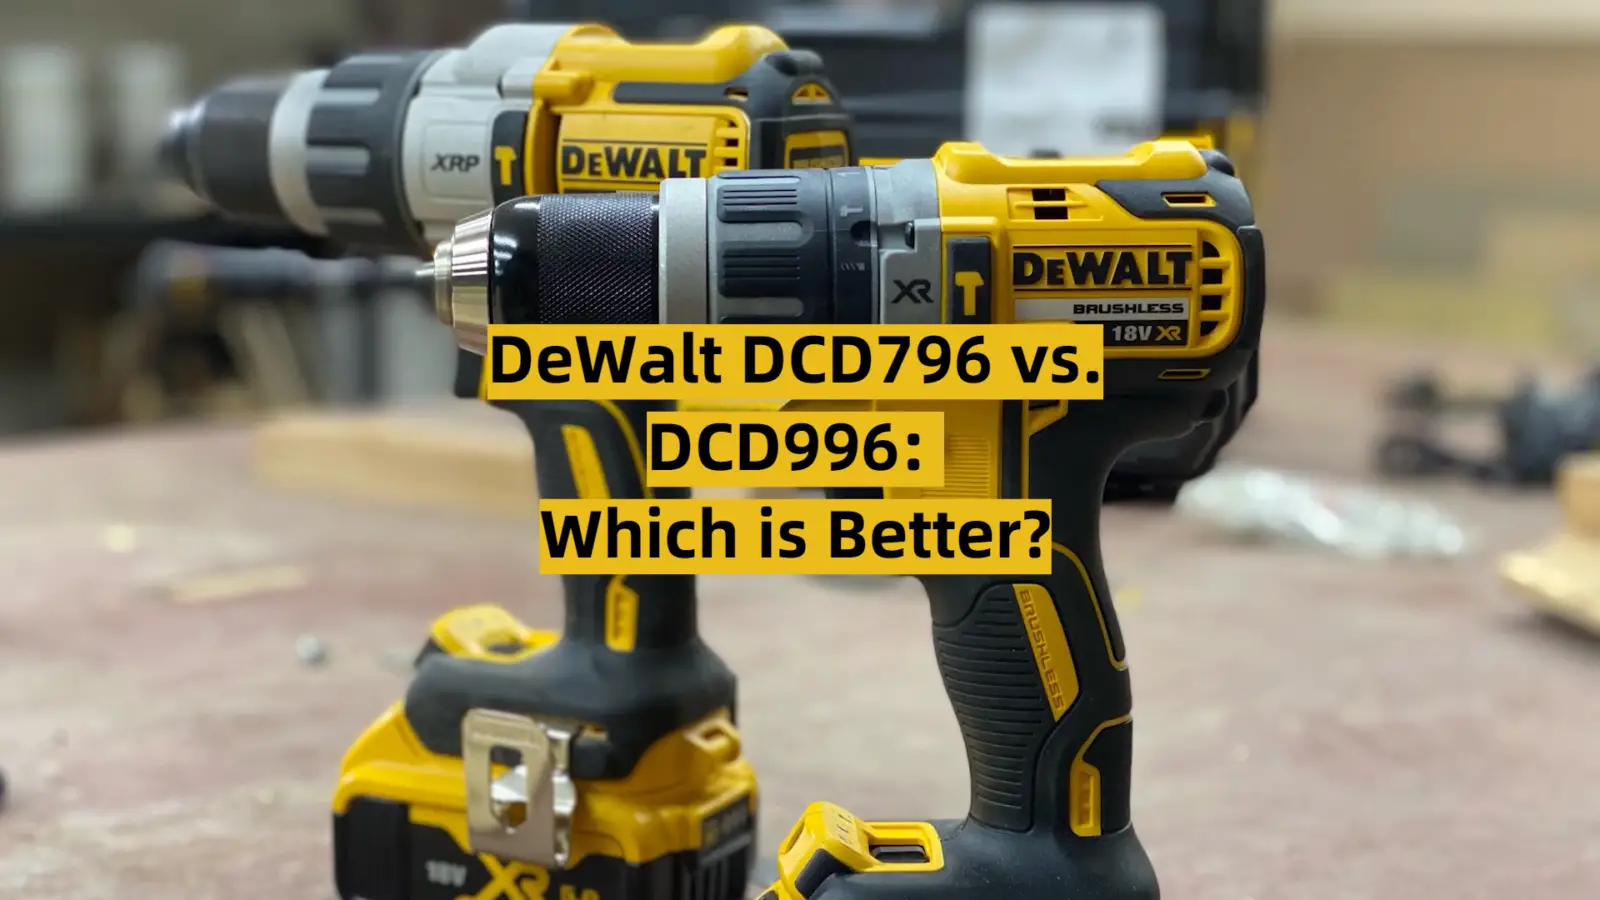 DeWalt DCD796 vs. DCD996: Which is Better?